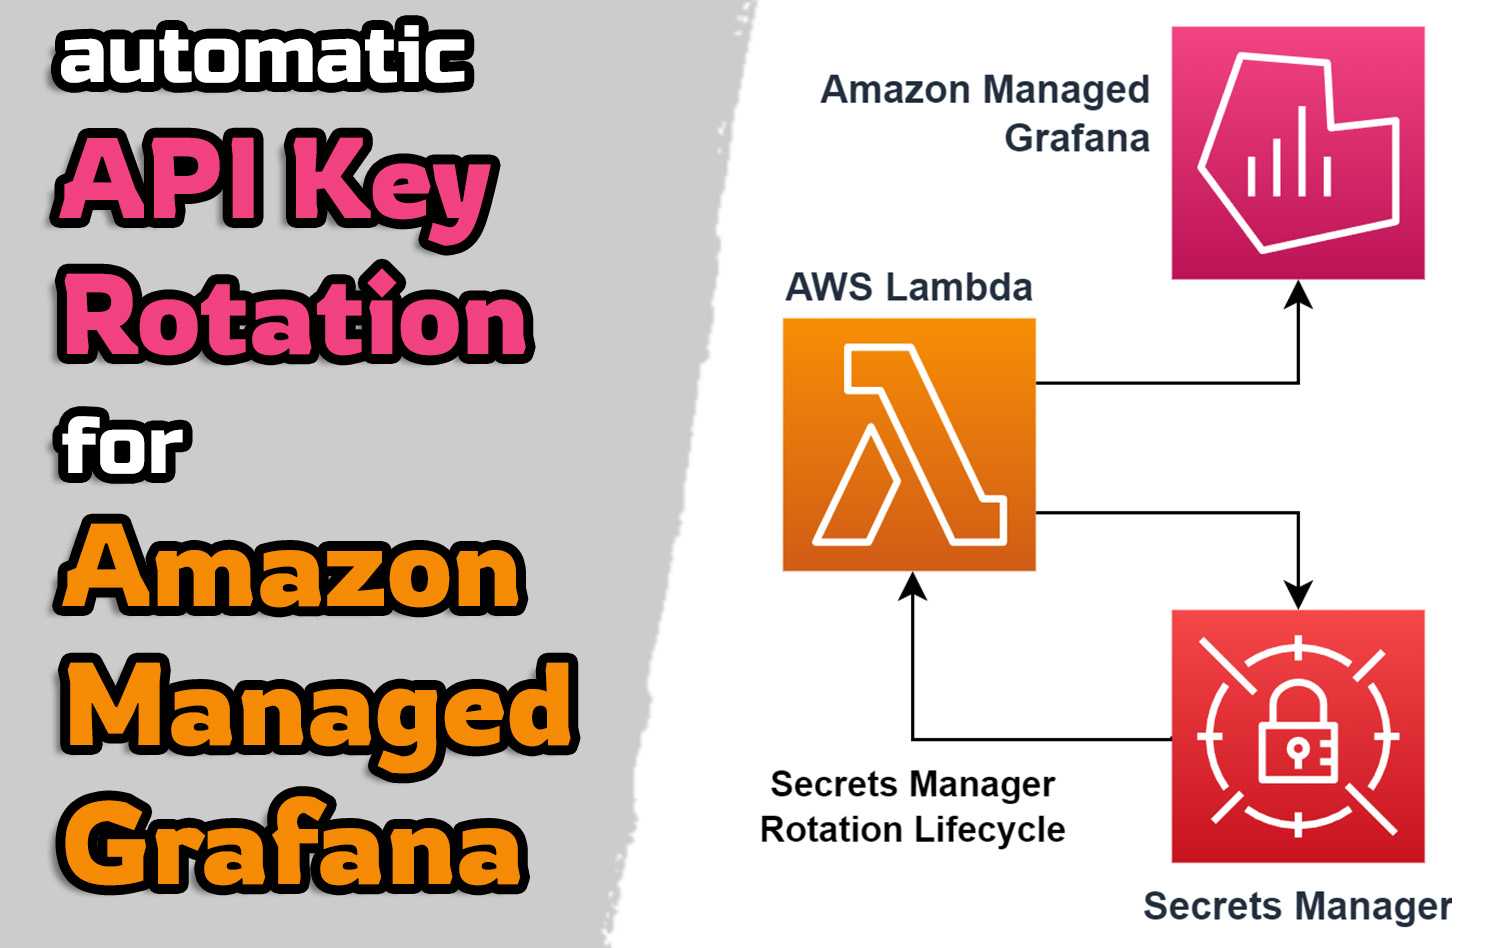 Automatic API Key rotation for Amazon Managed Grafana